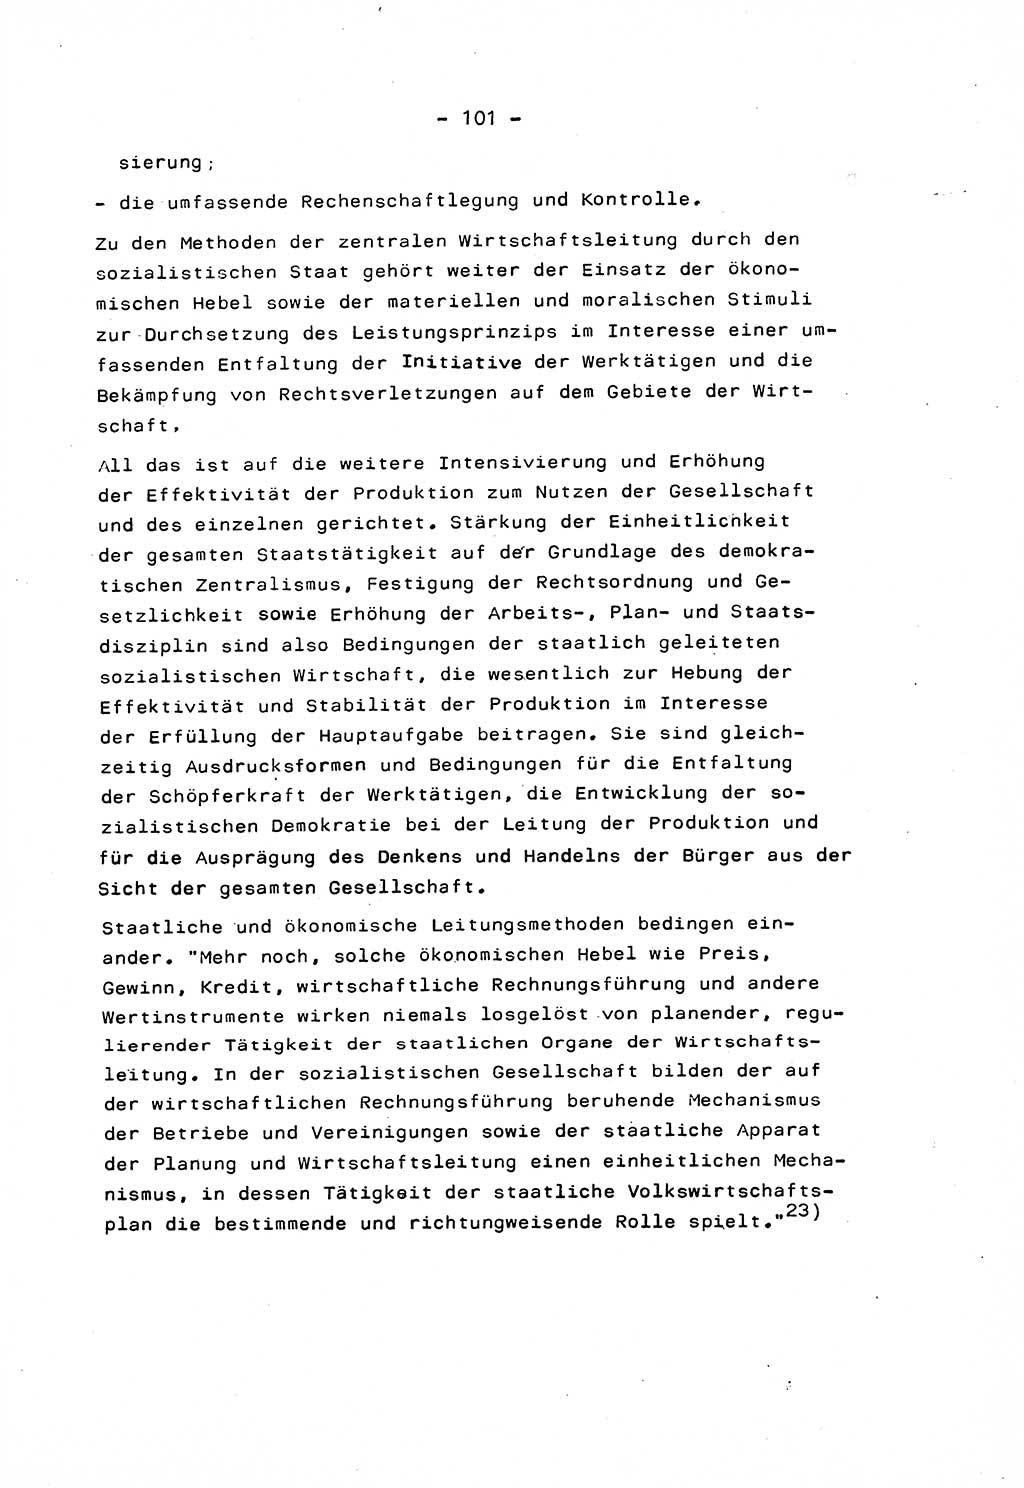 Marxistisch-leninistische Staats- und Rechtstheorie [Deutsche Demokratische Republik (DDR)] 1975, Seite 101 (ML St.-R.-Th. DDR 1975, S. 101)